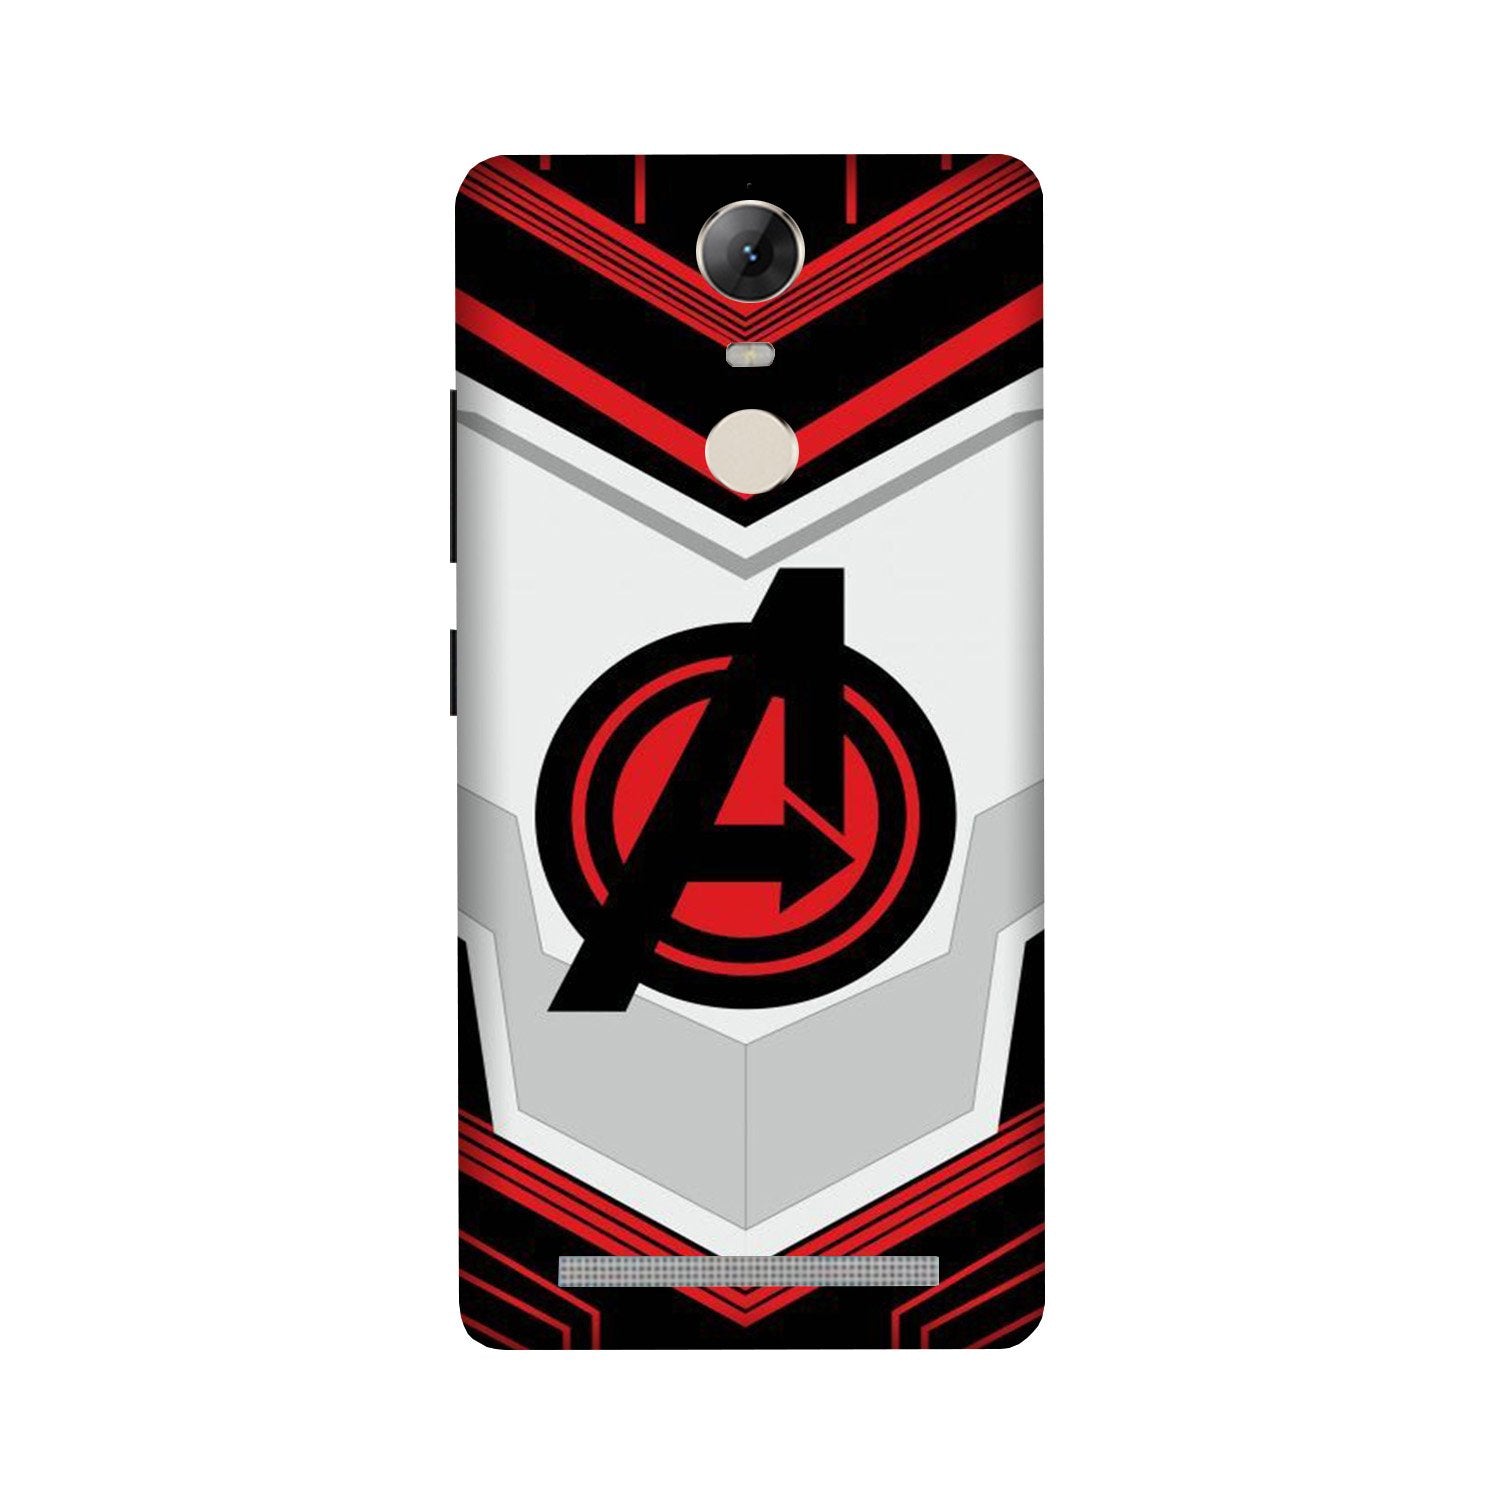 Avengers2 Case for Lenovo Vibe K5 Note (Design No. 255)